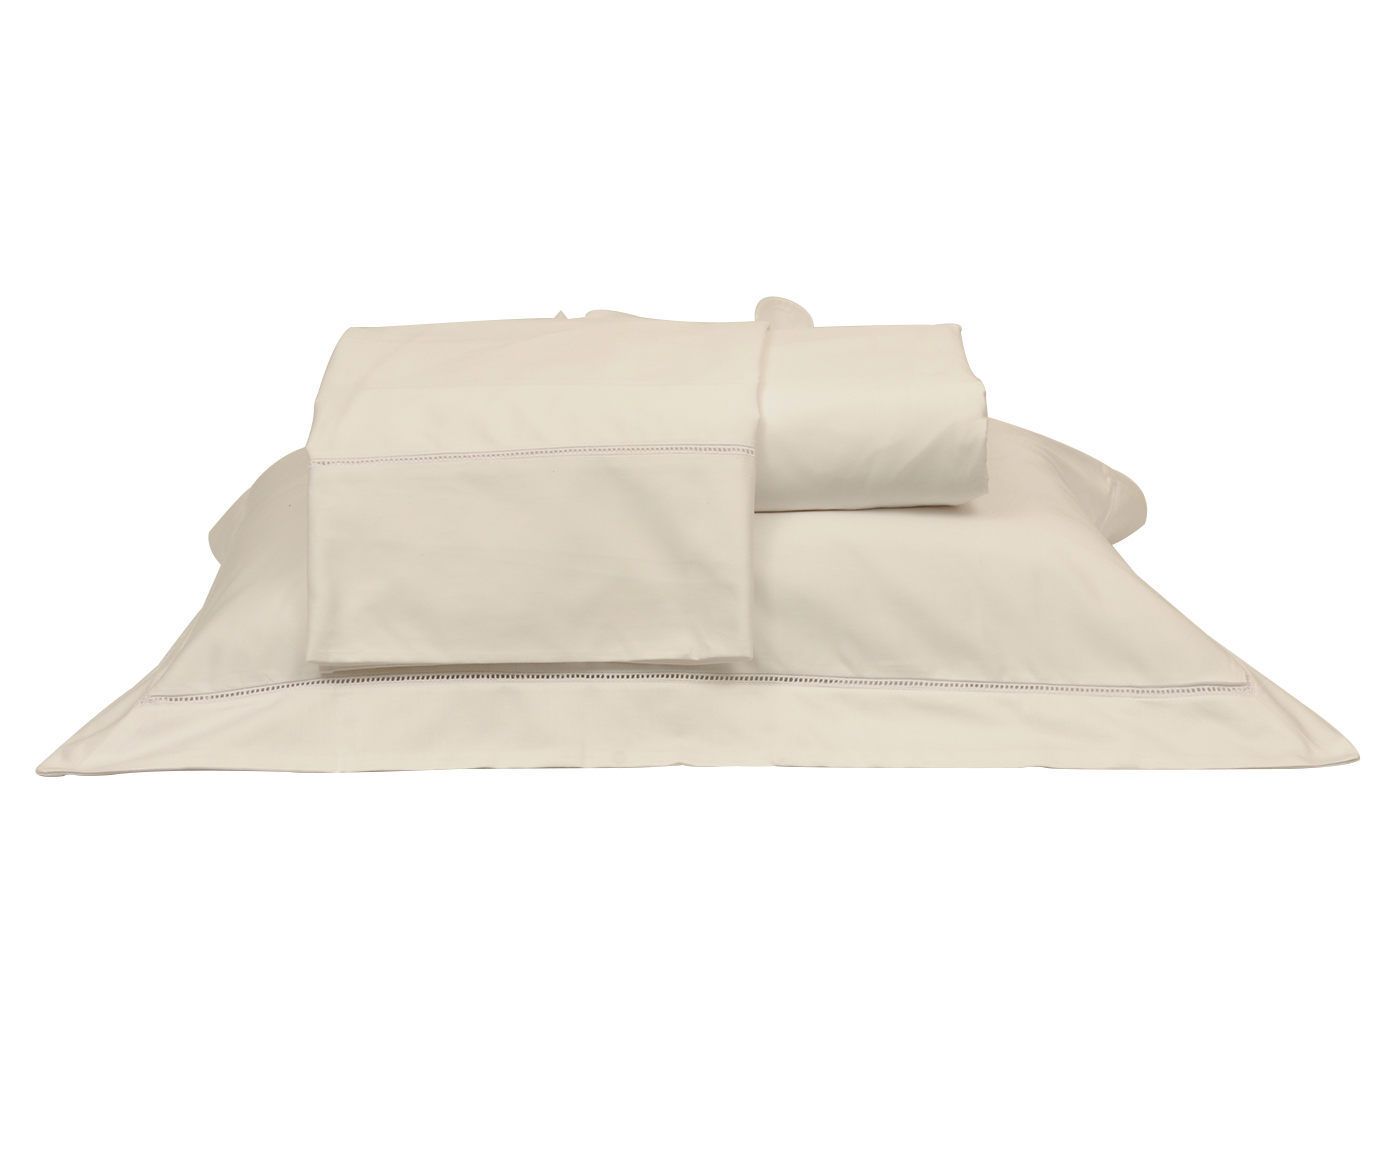 Jogo de lençol essentia ajour 600 fios - para cama de solteiro | Westwing.com.br